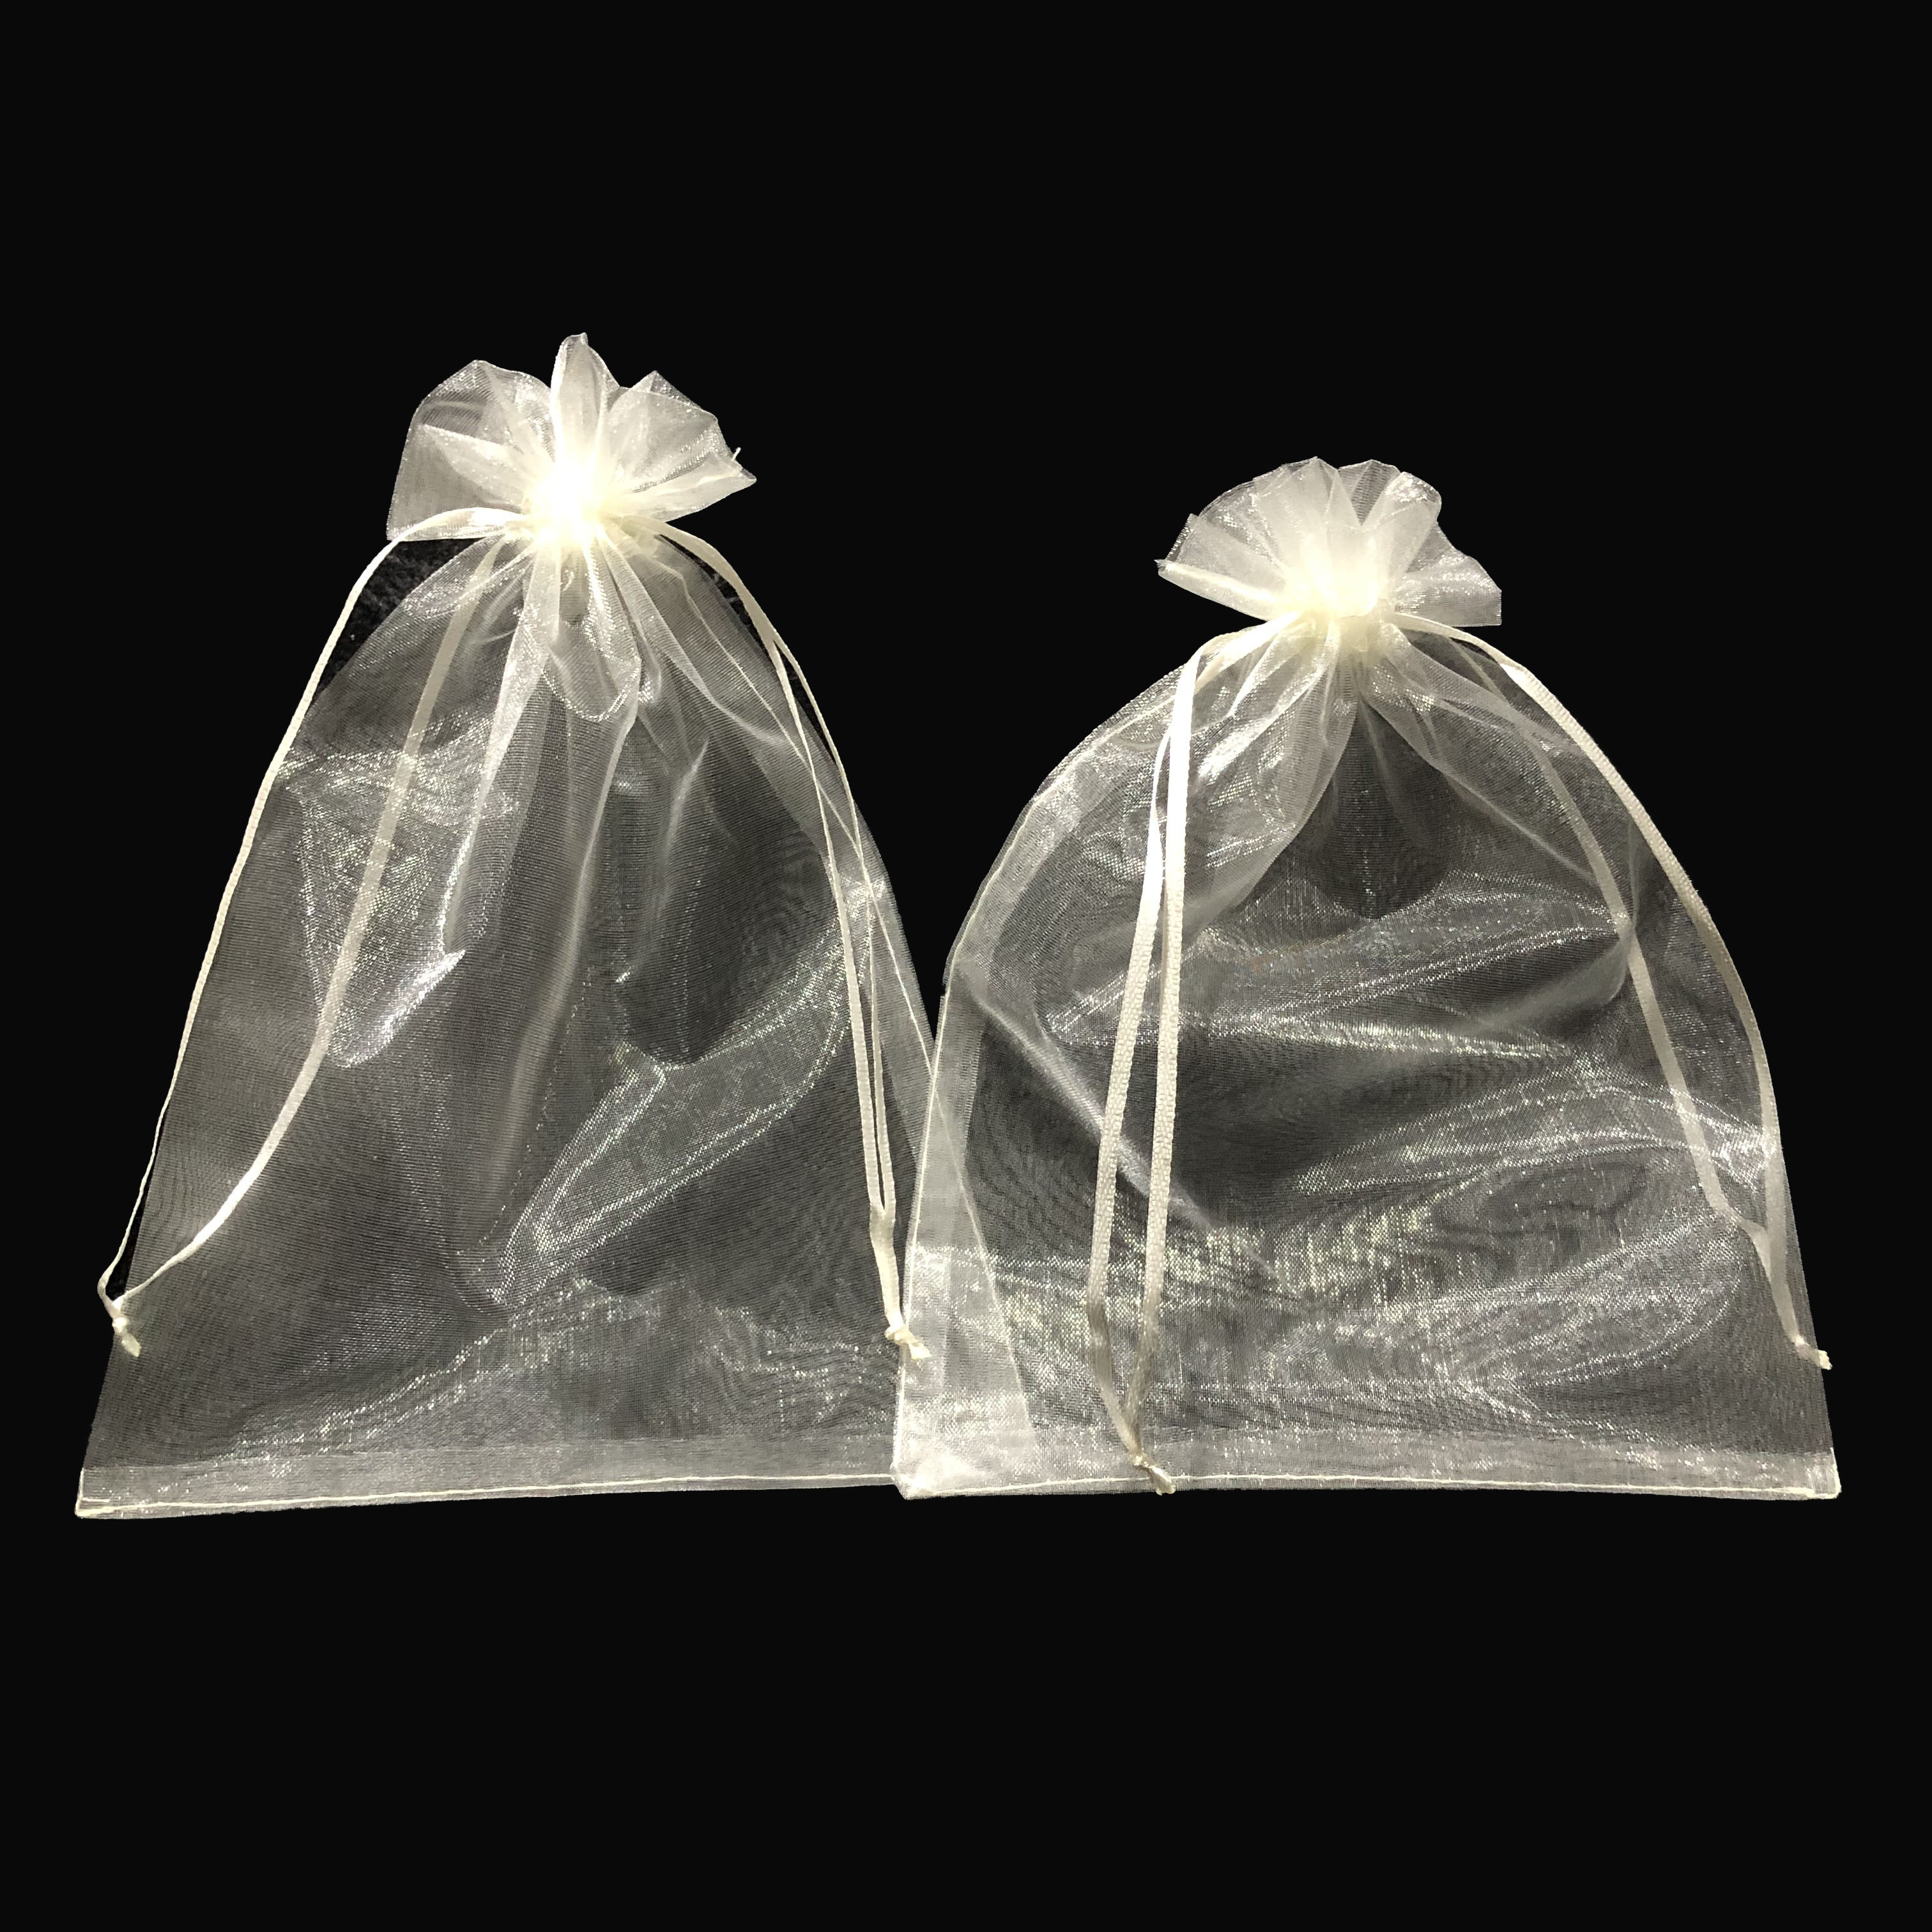 ถุงผ้าแก้ว 9 x 15 CM แพ็ค(50ใบ)  ) ถุงผ้า ถุงผ้าไหมแก้ว ถุงใส่ของขวัญ ถุงผ้าหูรูด ถุงใส่ของชำร่วย พร้อมส่ง